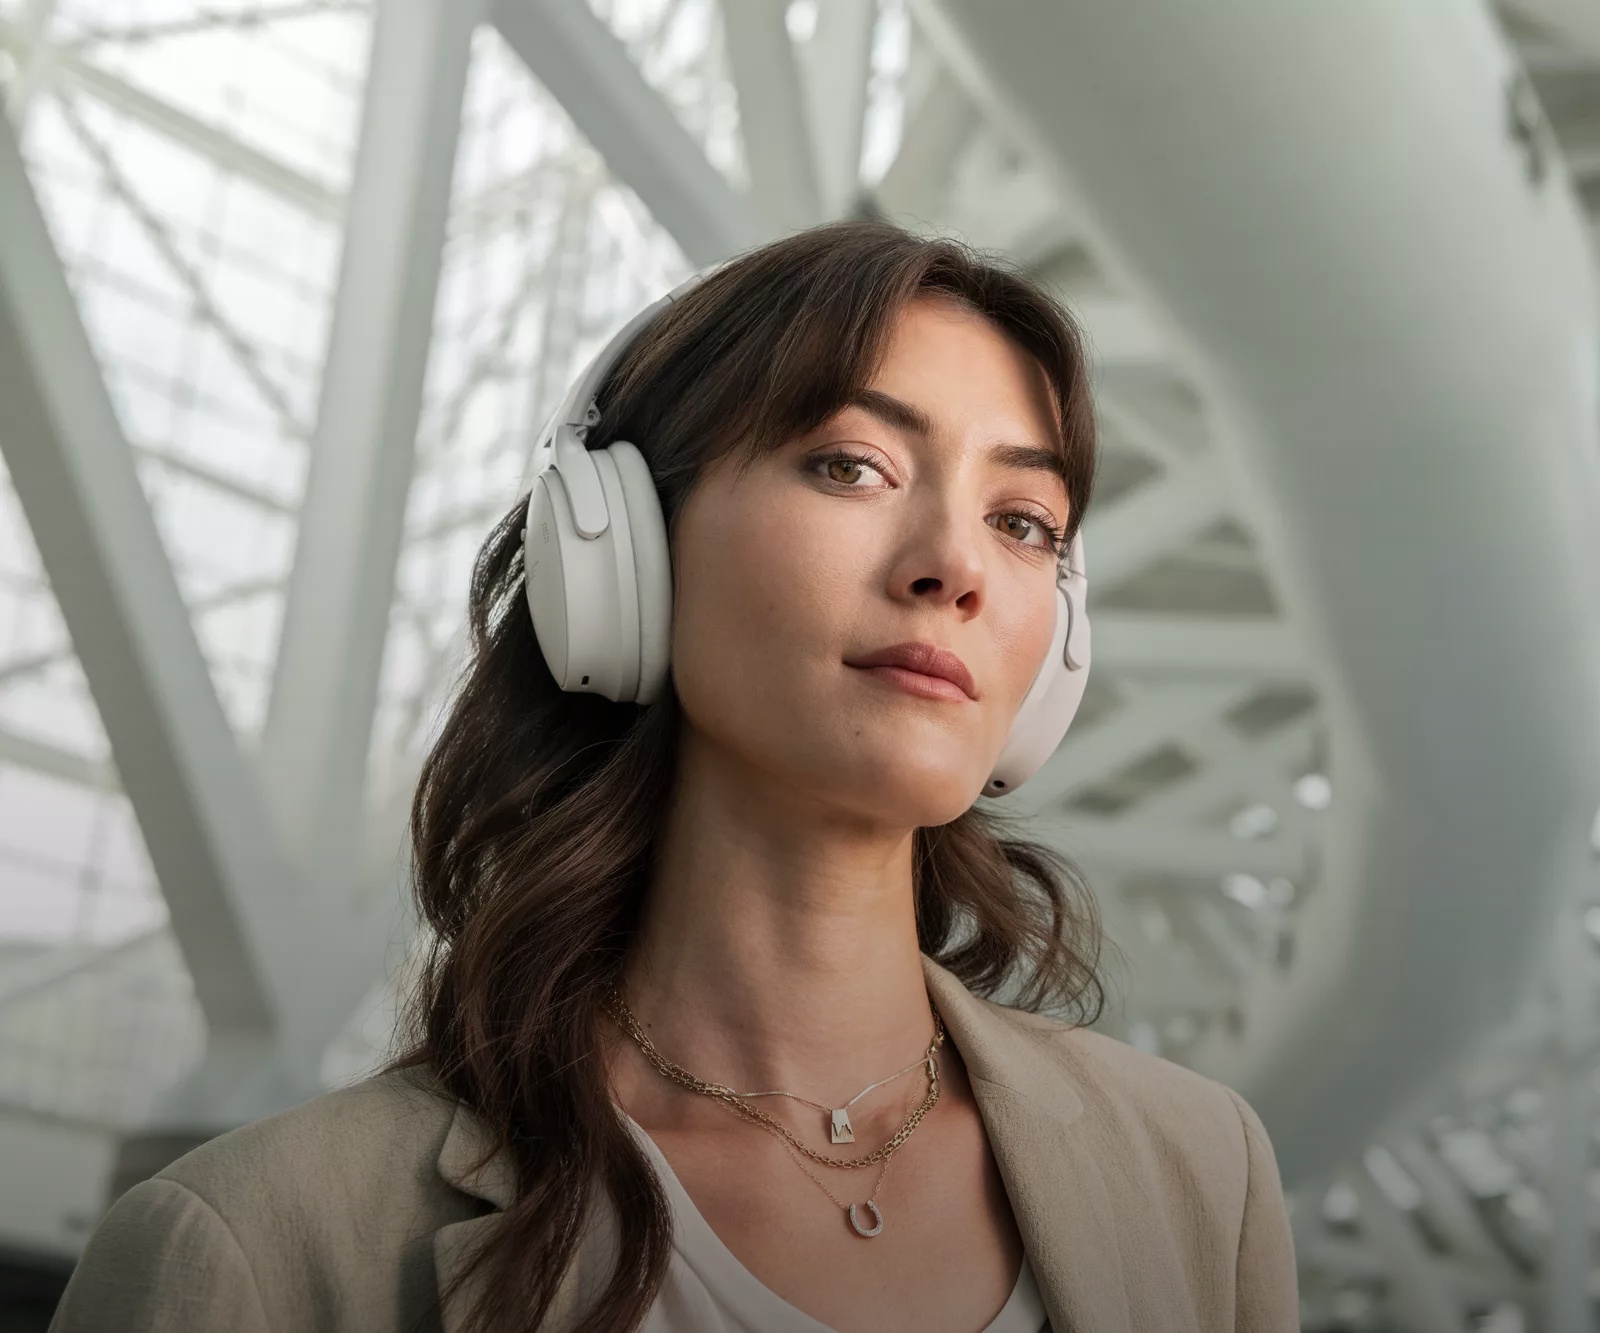 Woman wearing QuietComfort Headphones in an airport